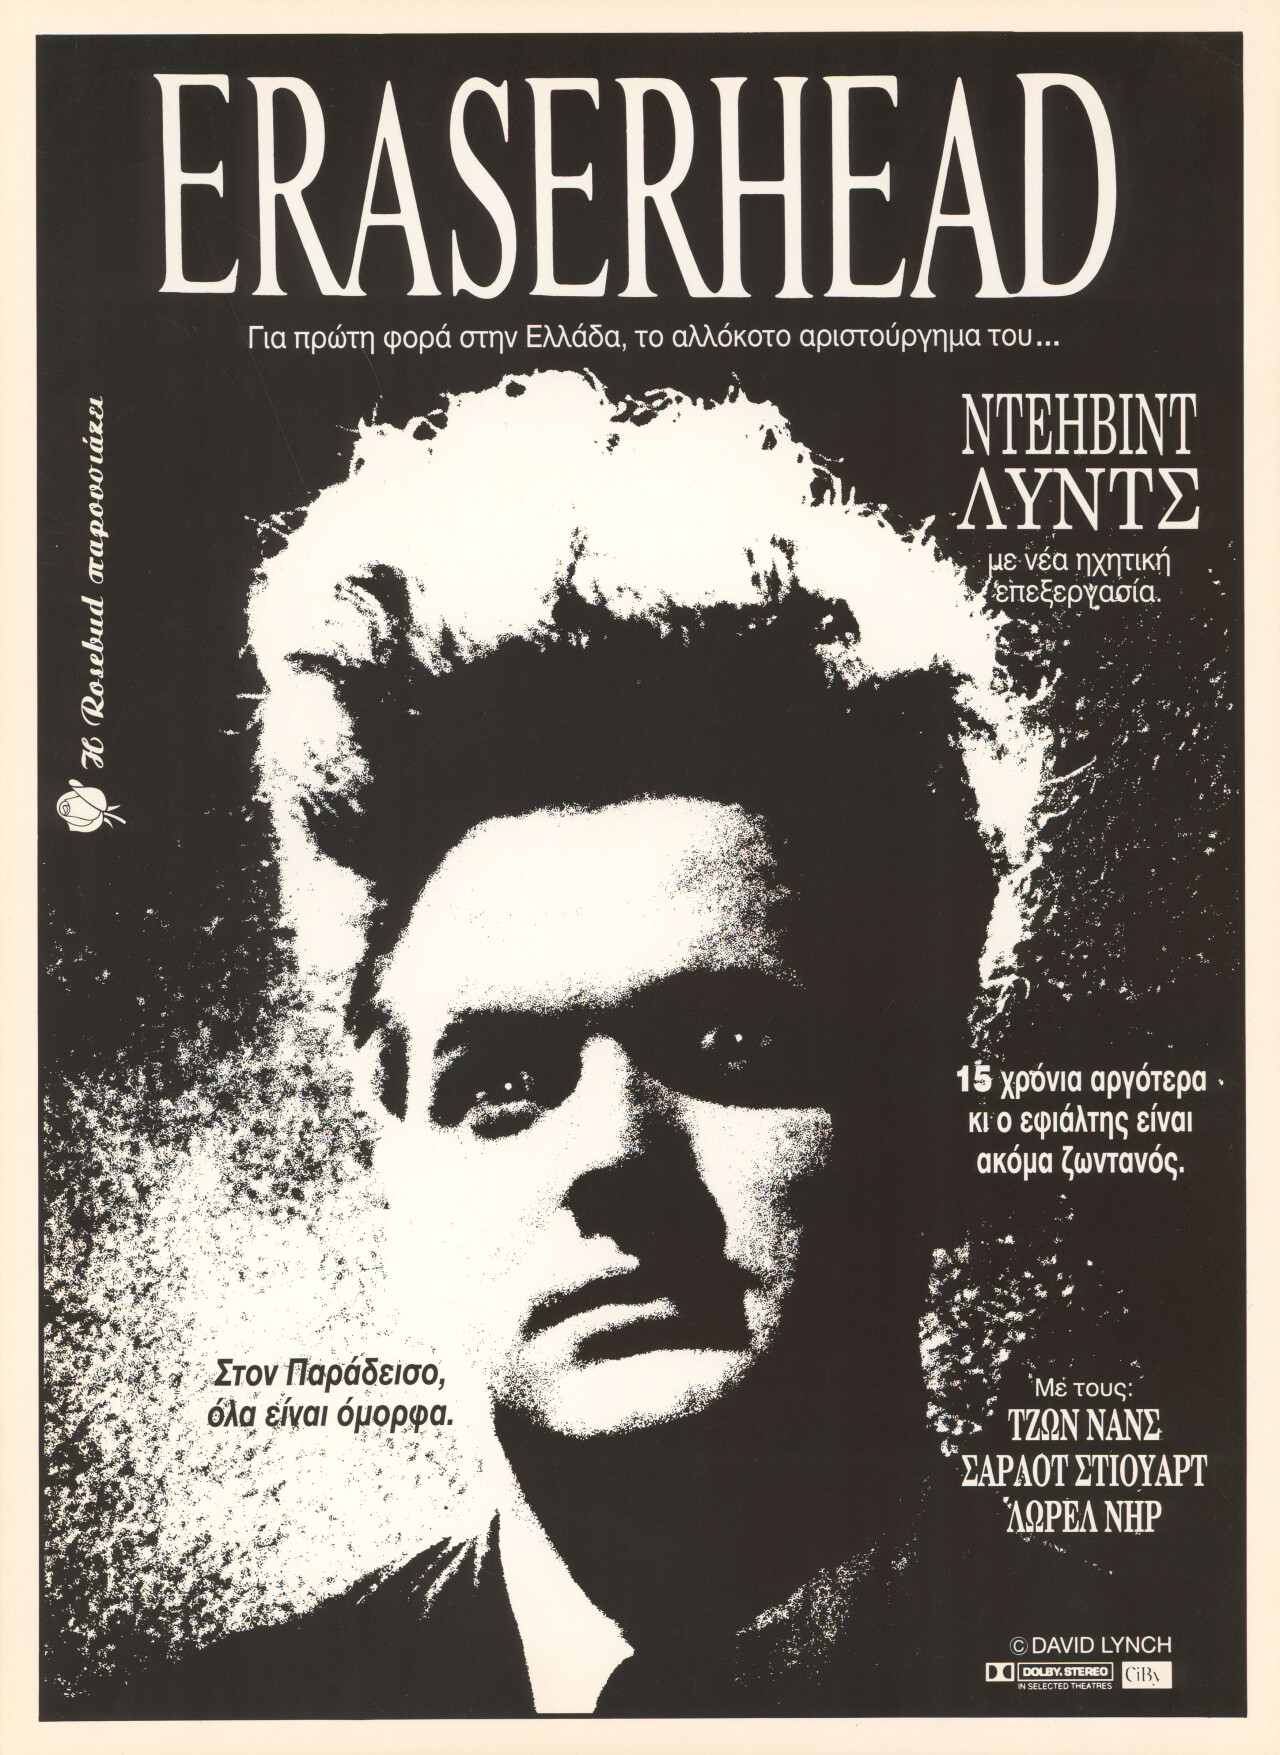 Голова-ластик (Eraserhead, 1977), режиссёр Дэвид Линч, греческий постер к фильму (ужасы, 1990 год)